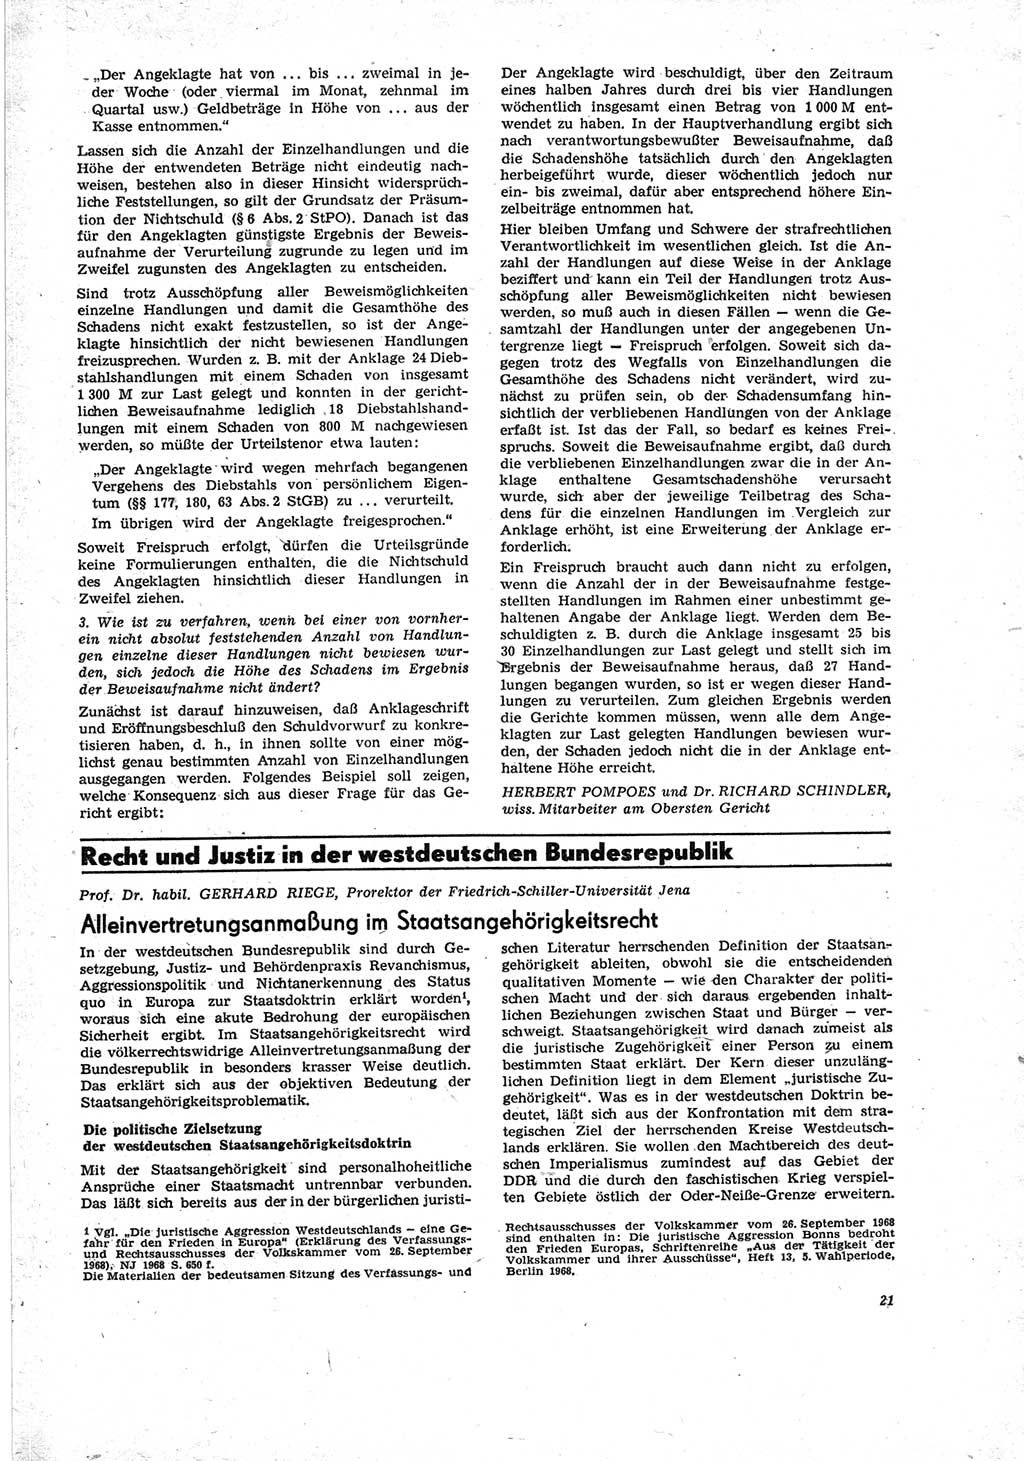 Neue Justiz (NJ), Zeitschrift für Recht und Rechtswissenschaft [Deutsche Demokratische Republik (DDR)], 23. Jahrgang 1969, Seite 21 (NJ DDR 1969, S. 21)